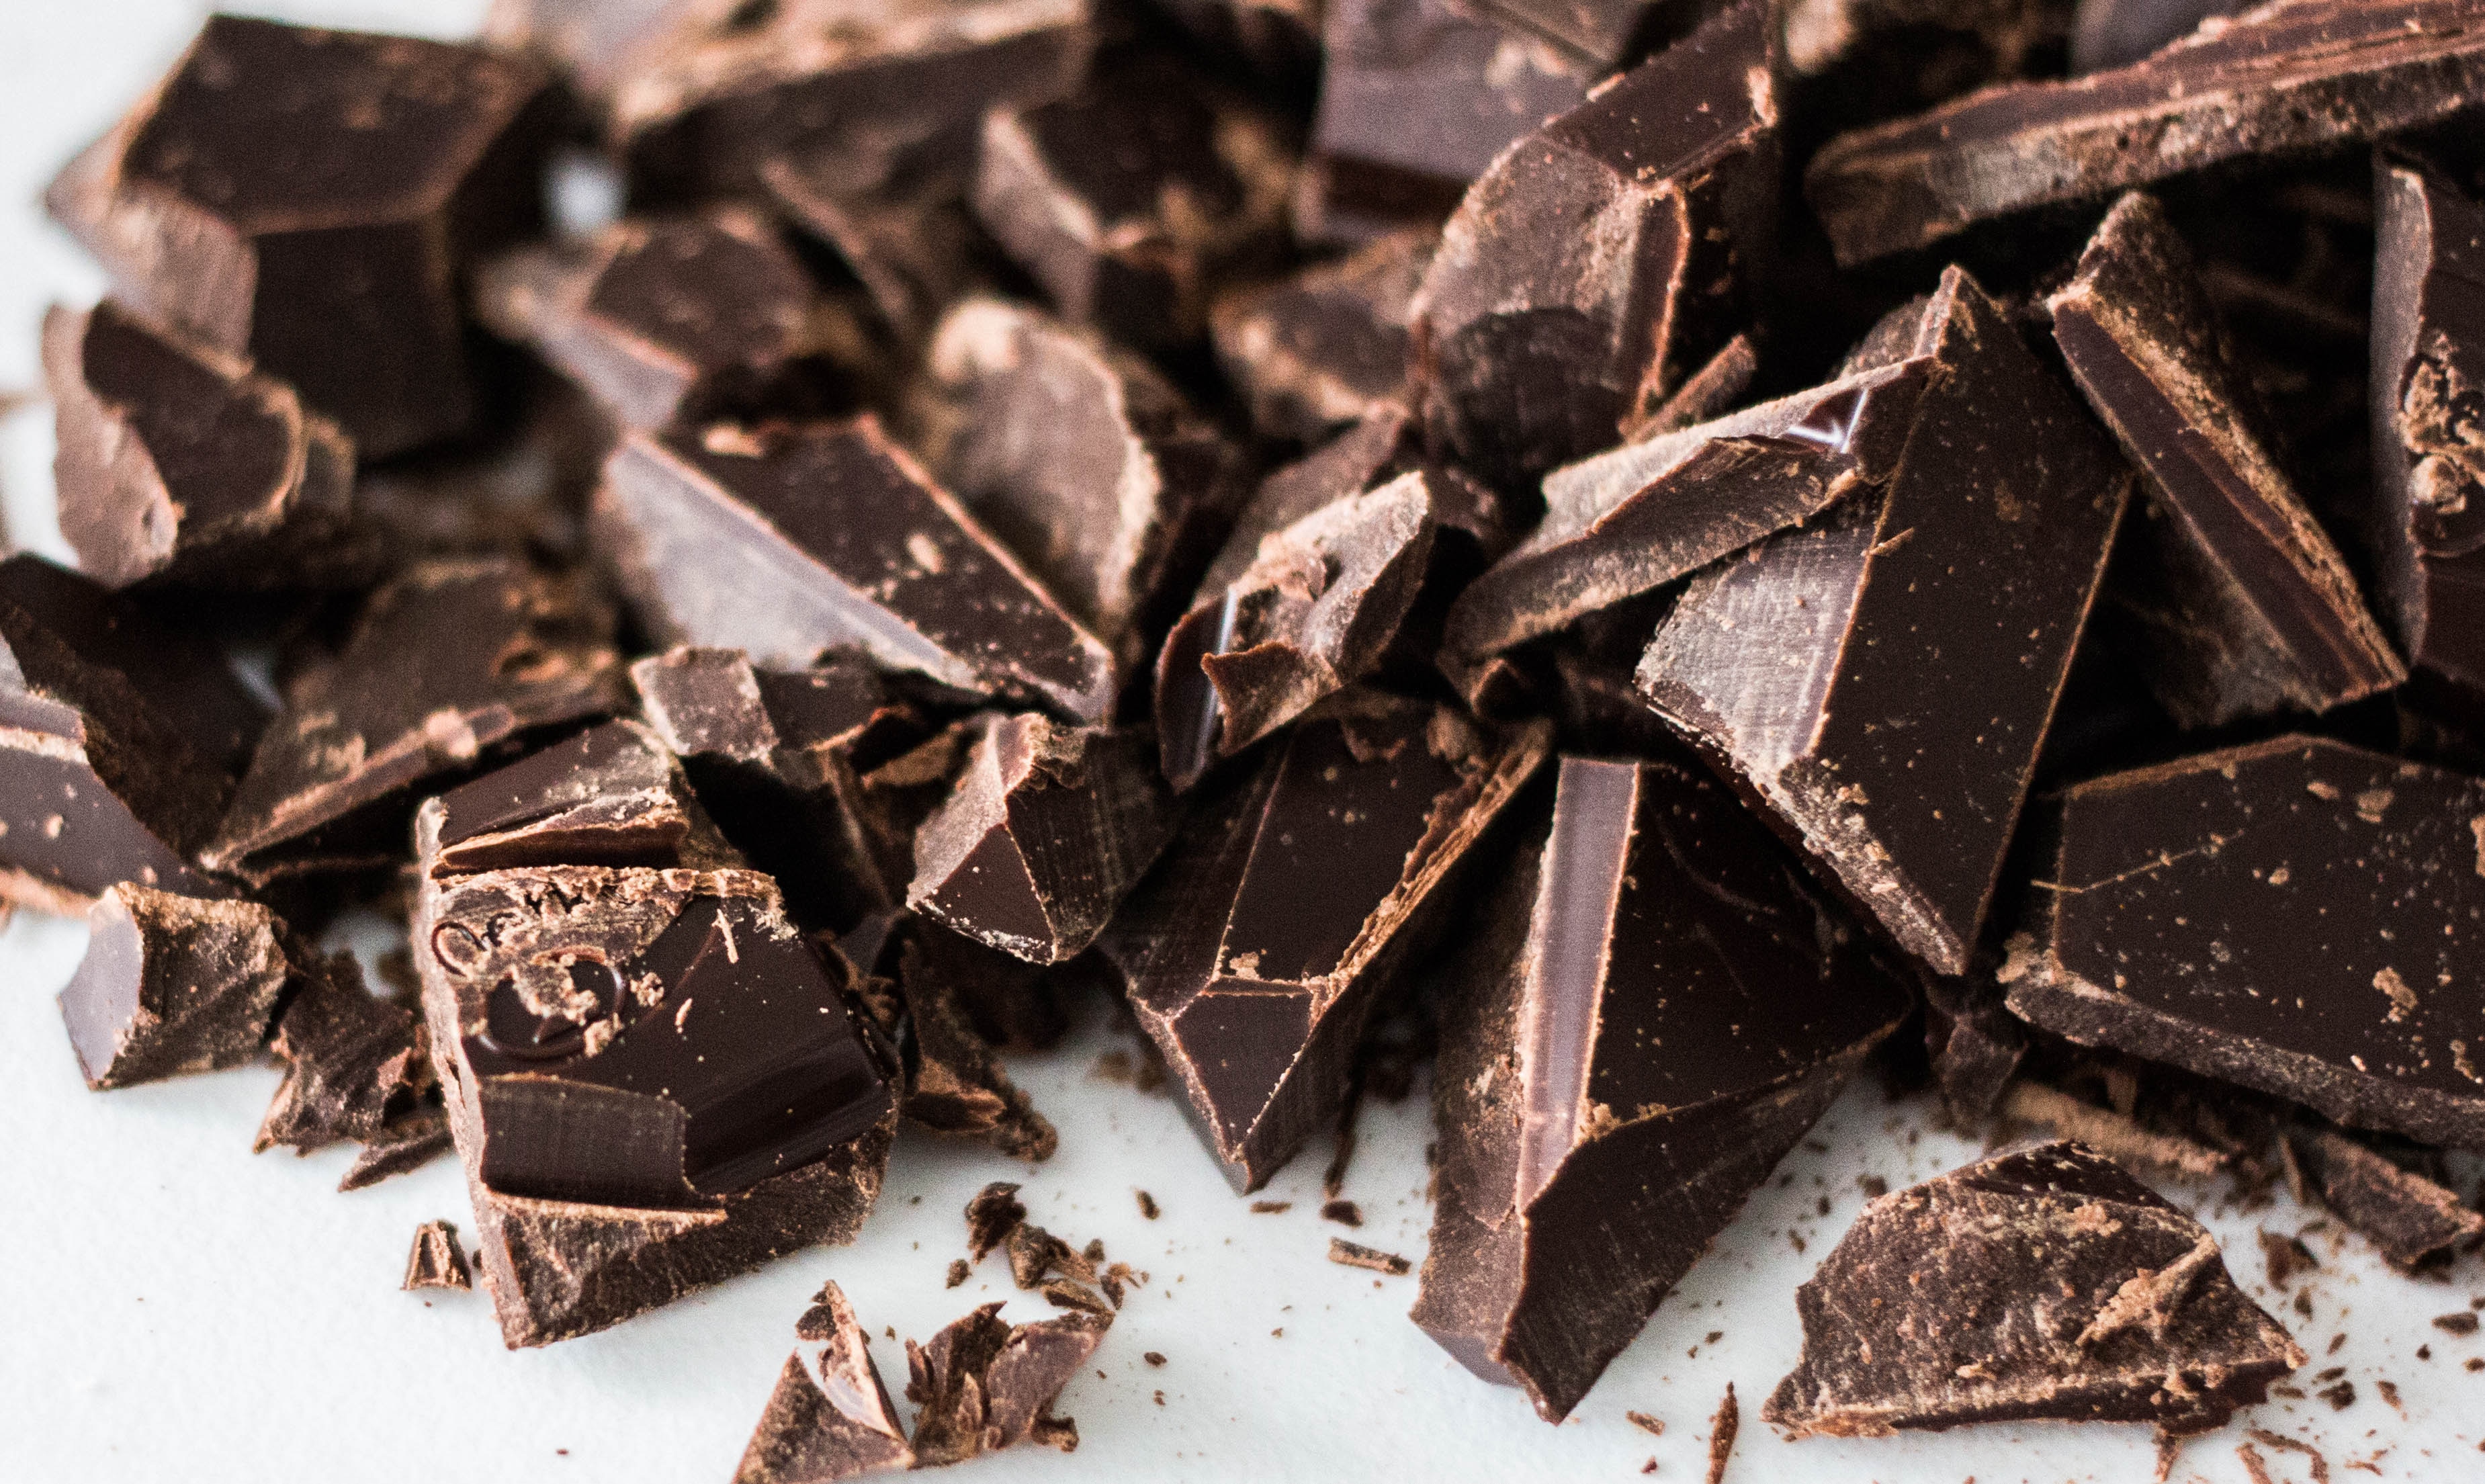 A reggeli csokievés segíthet a fogyásban a tudósok szerint | bookuniverse.hu